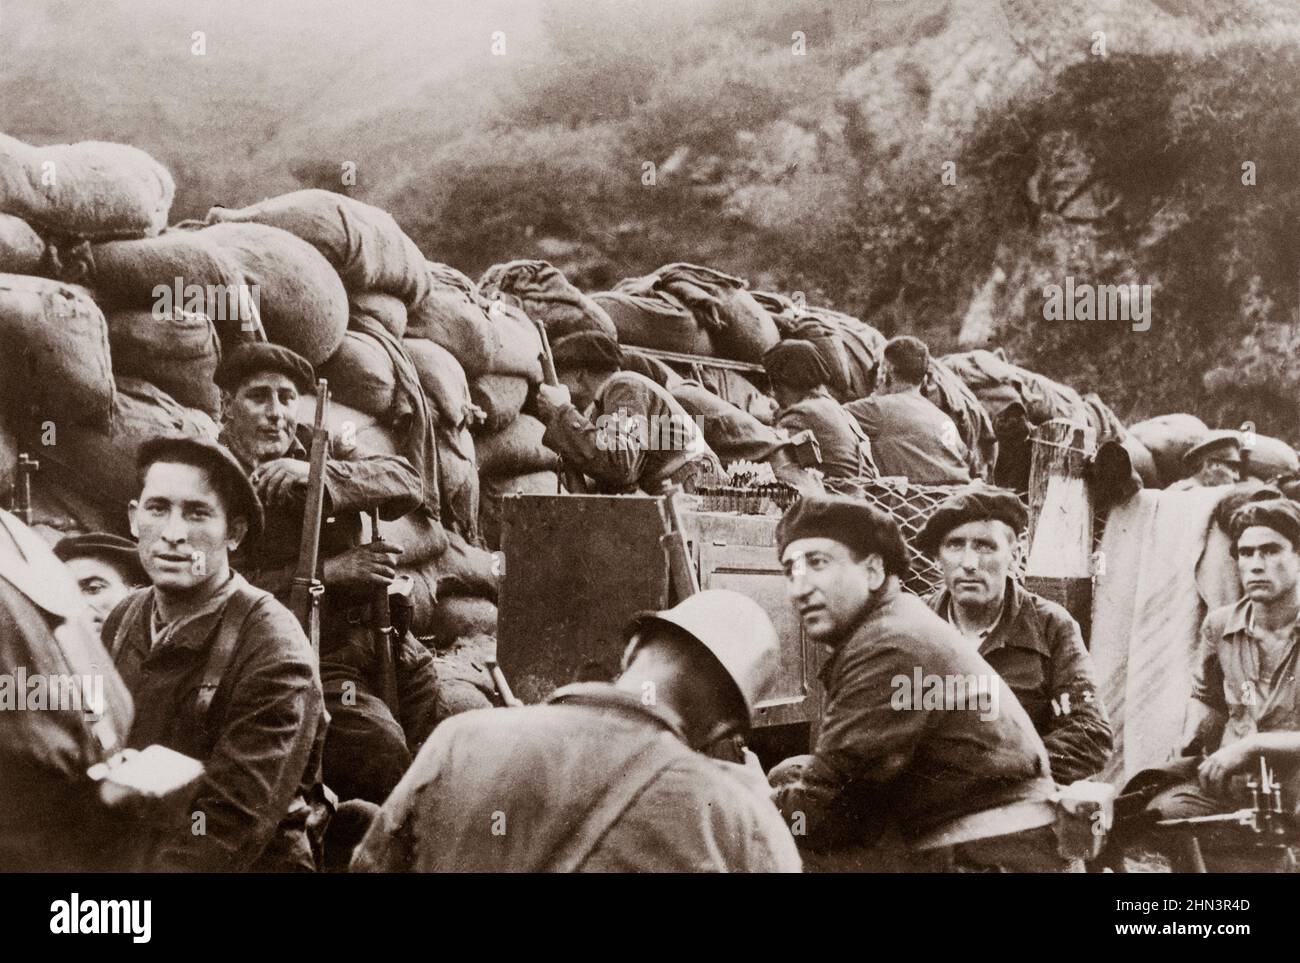 Archivfoto des Spanischen Bürgerkrieges. Republikanische Milizionäre hinter Sandsäcken (Schlacht von Irún). Spanien. 1936 Stockfoto